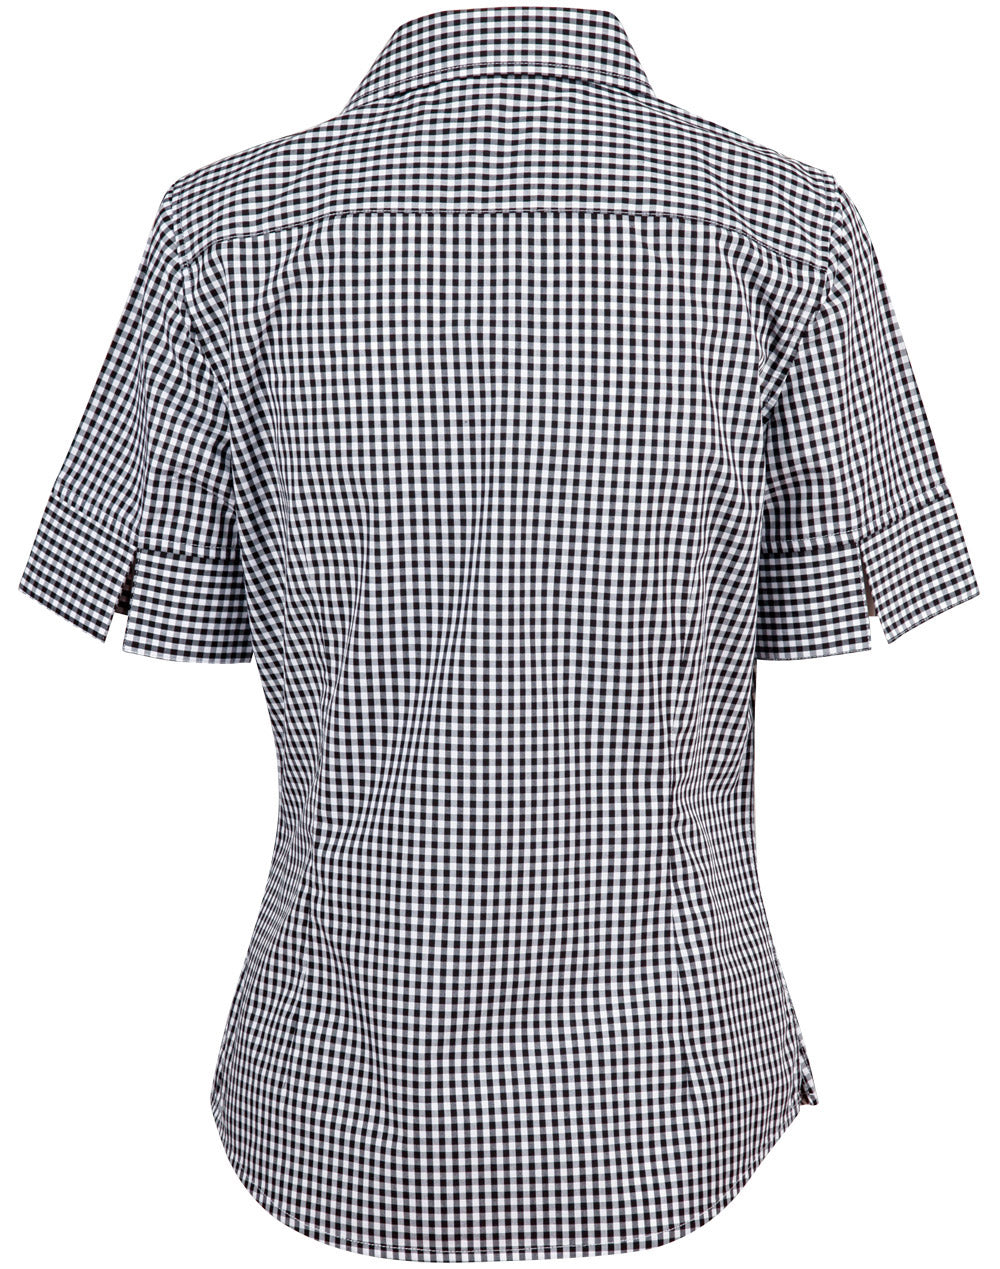 Winning Spirit- Ladies’ Gingham Check Short Sleeve Shirt-M8300S